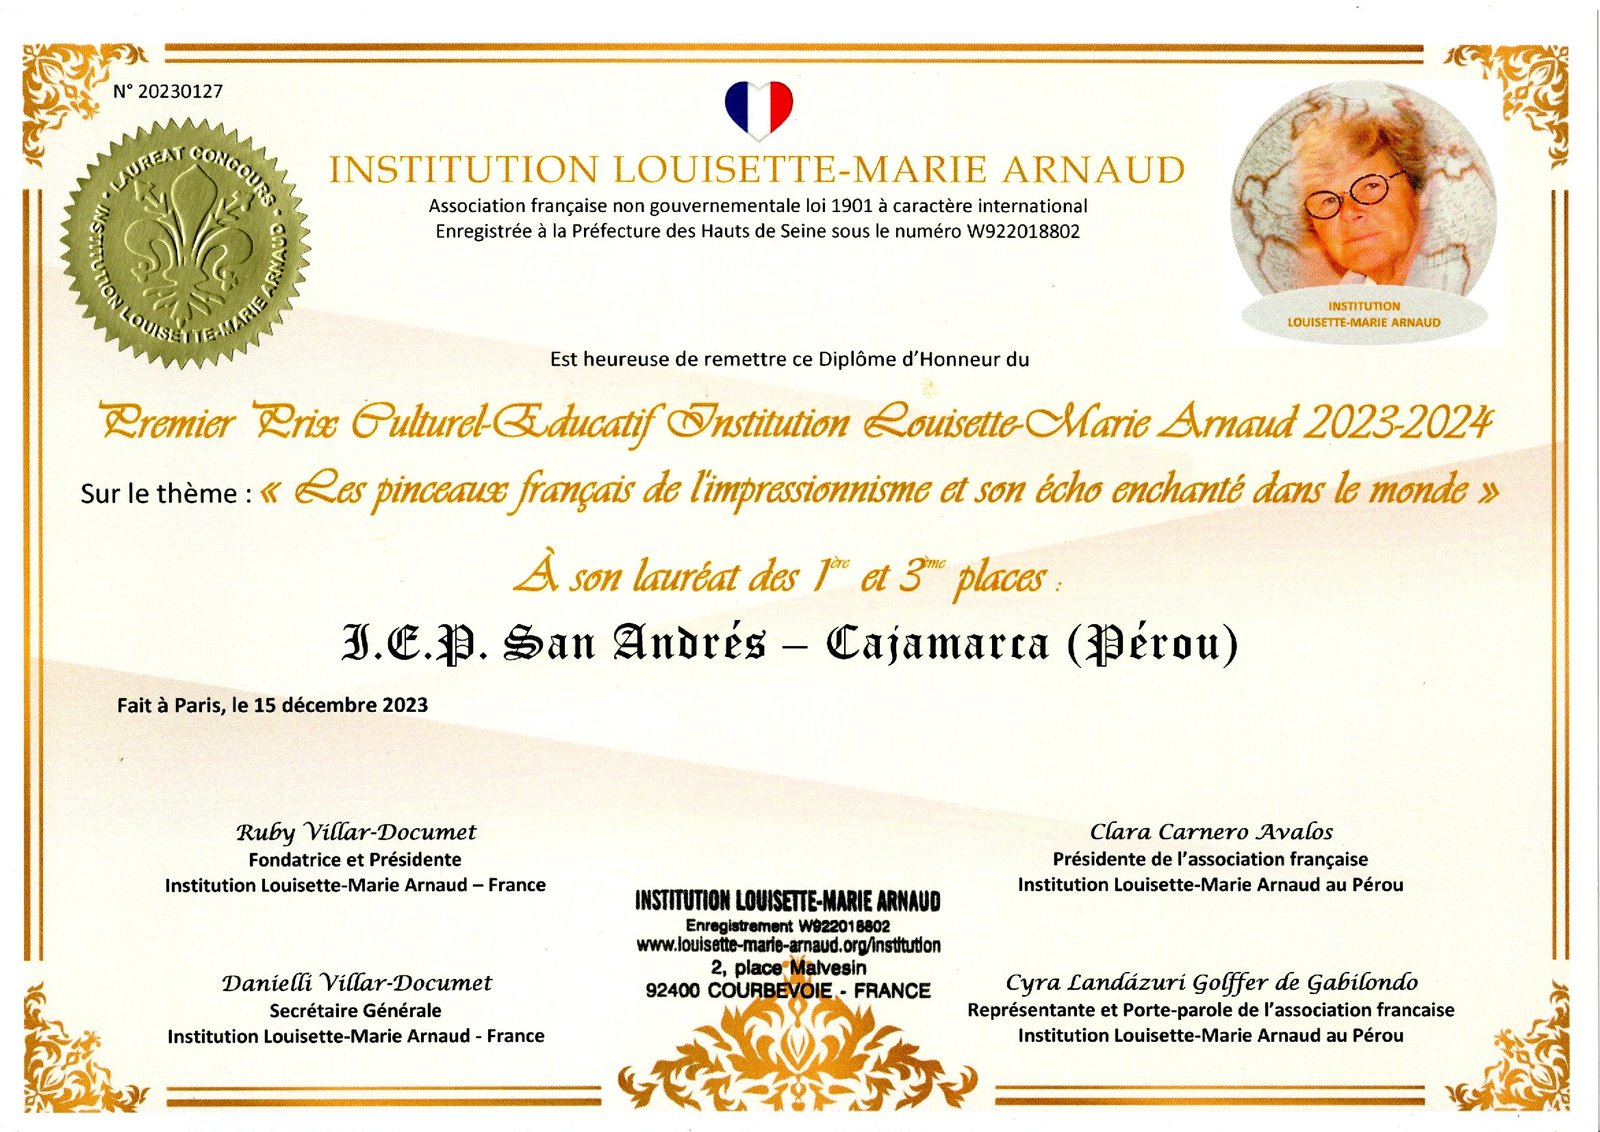 Laureat du Concours Culturel-Educatif Institution Louisette-Marie Arnaud 2021